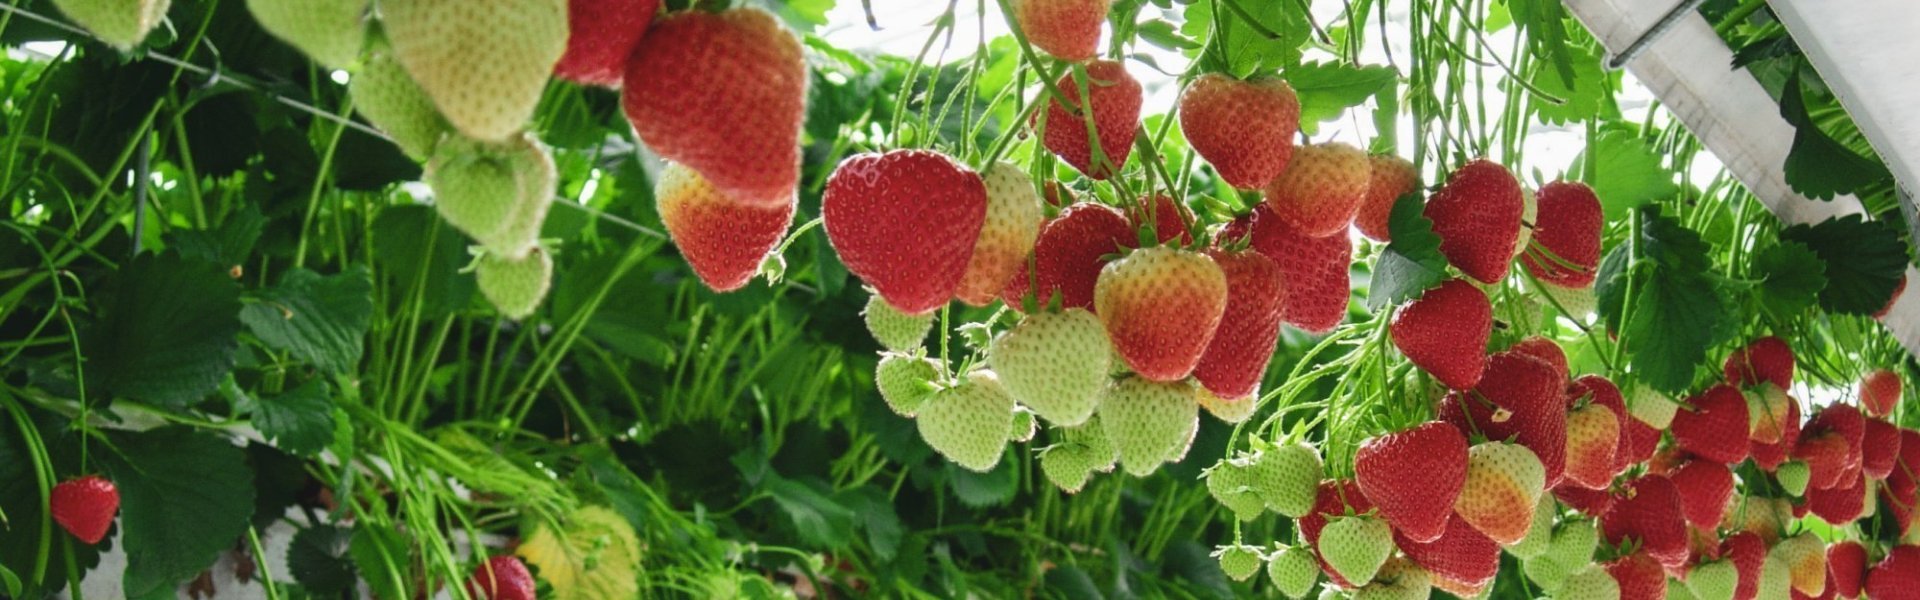 Aardbeienteelt in serre. Aardbeien hangen omhoog in de serre langs een witte goot. Er zijn groene en rode aardbeien. 